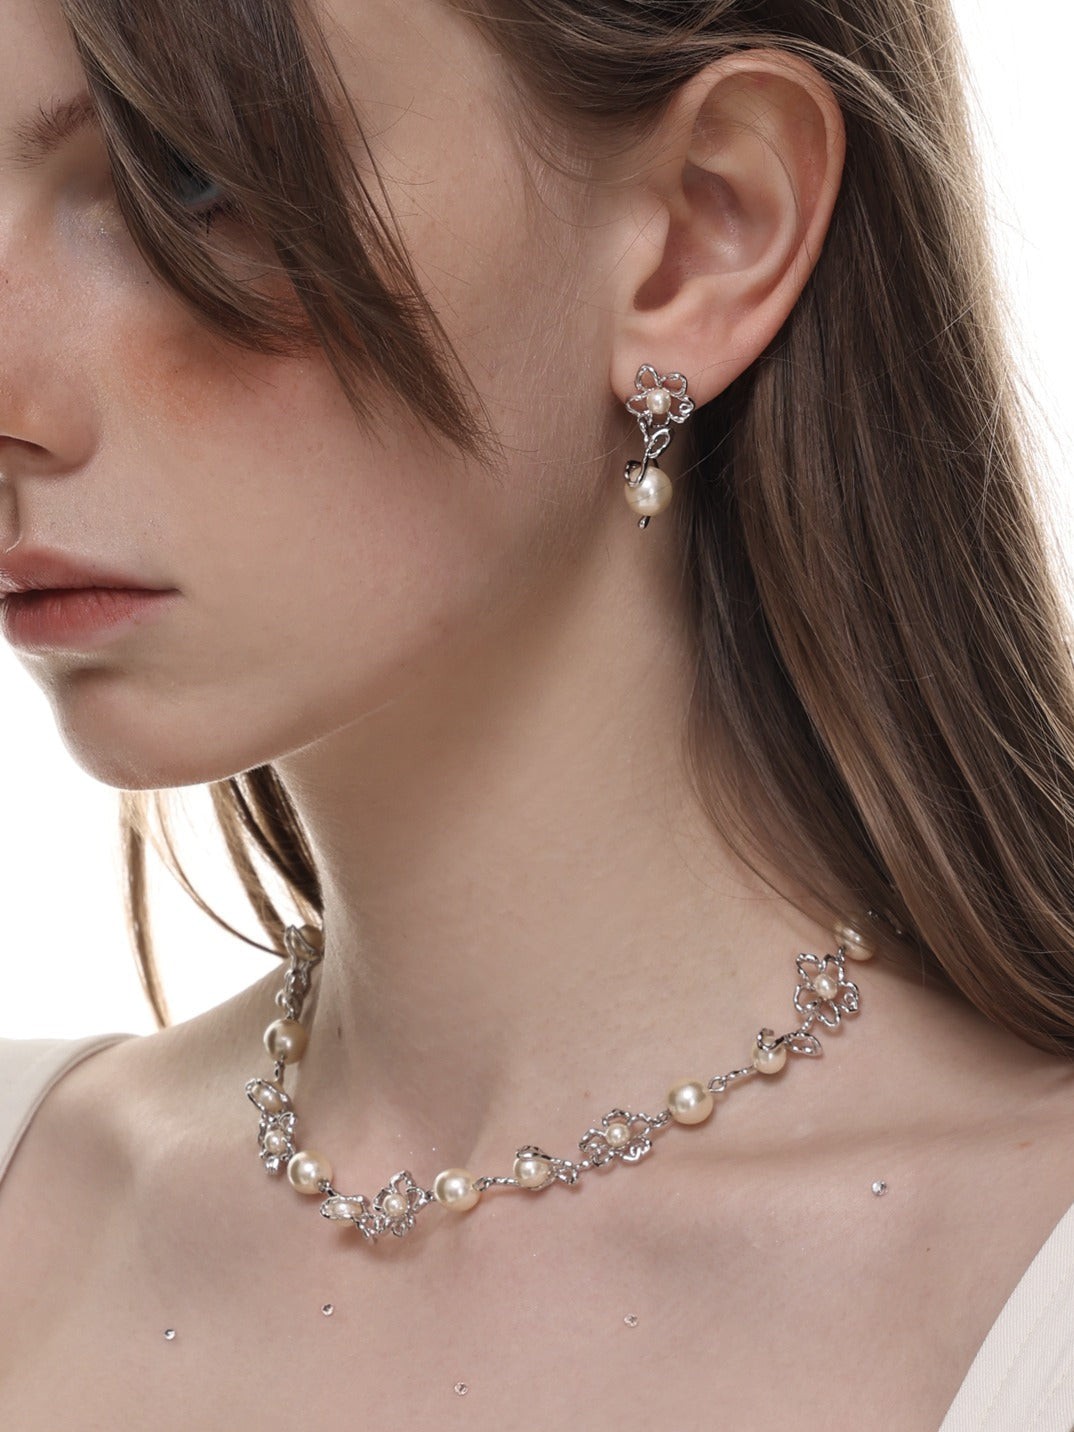 lovevop Original Designed Floral Pearl Beaded Necklace